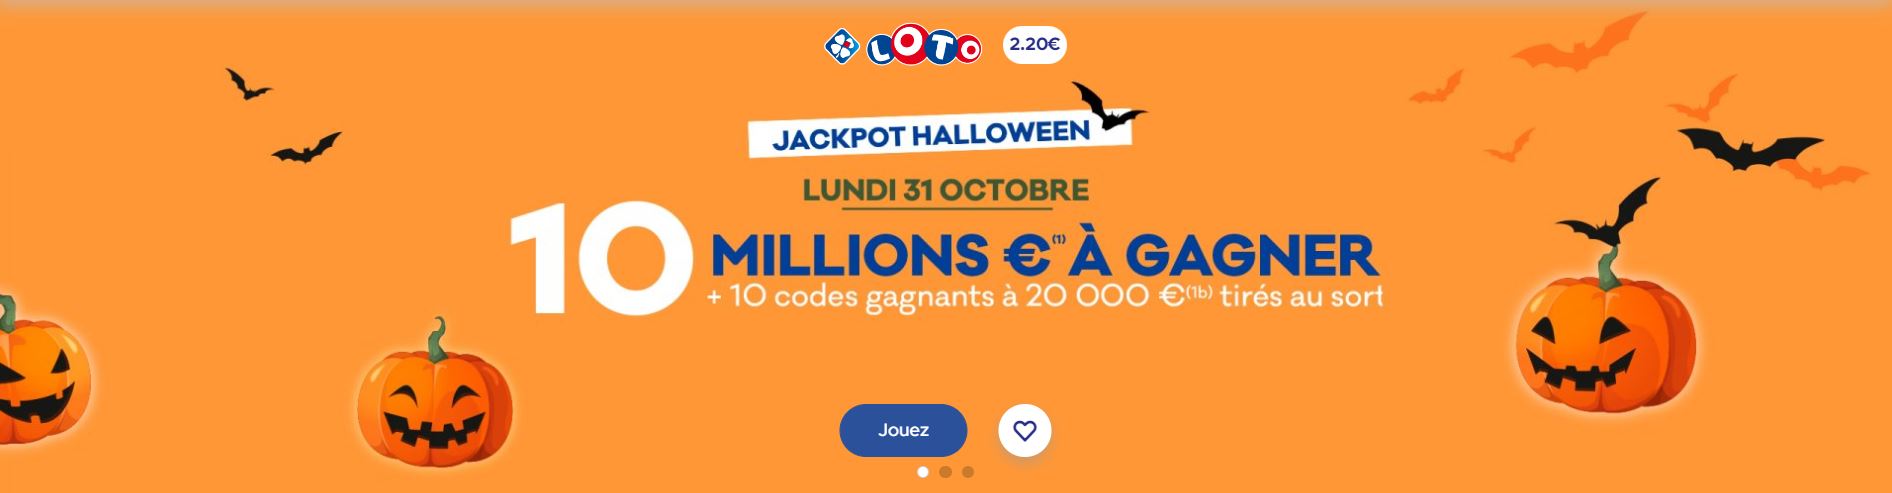 Jackpot d'Halloween de 10 millions d'euros à gagner sur la FDJ